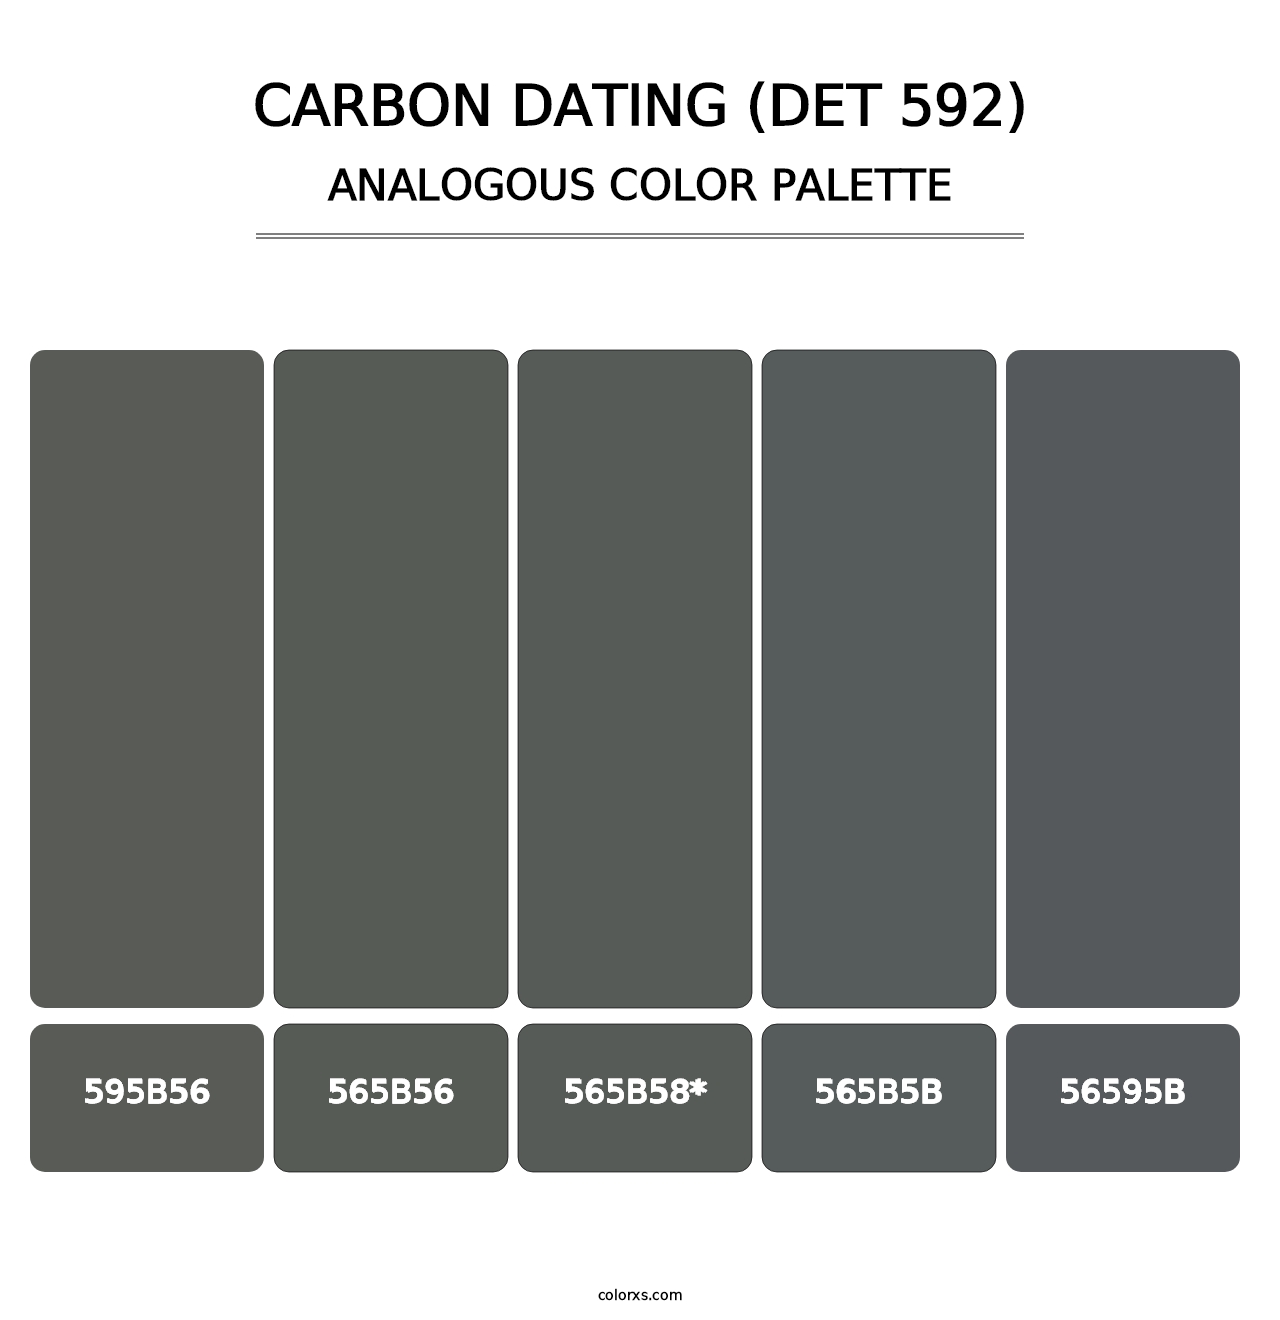 Carbon Dating (DET 592) - Analogous Color Palette